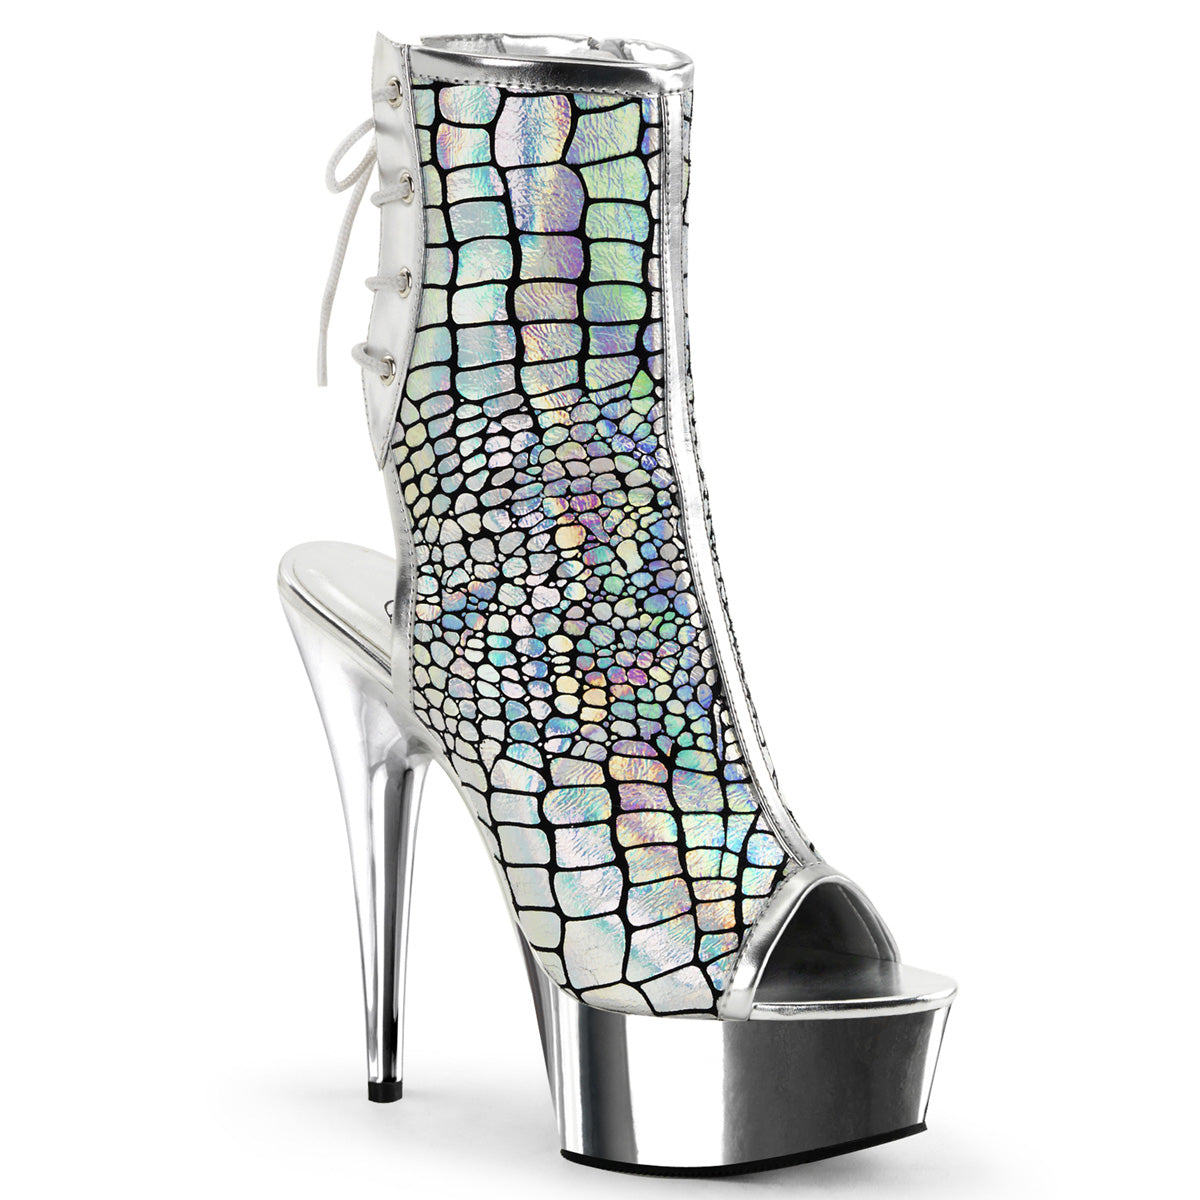 DELIGHT-1018HG 6" Heel Silver Hologram Pole Dancer Platforms-Pleaser- Sexy Shoes